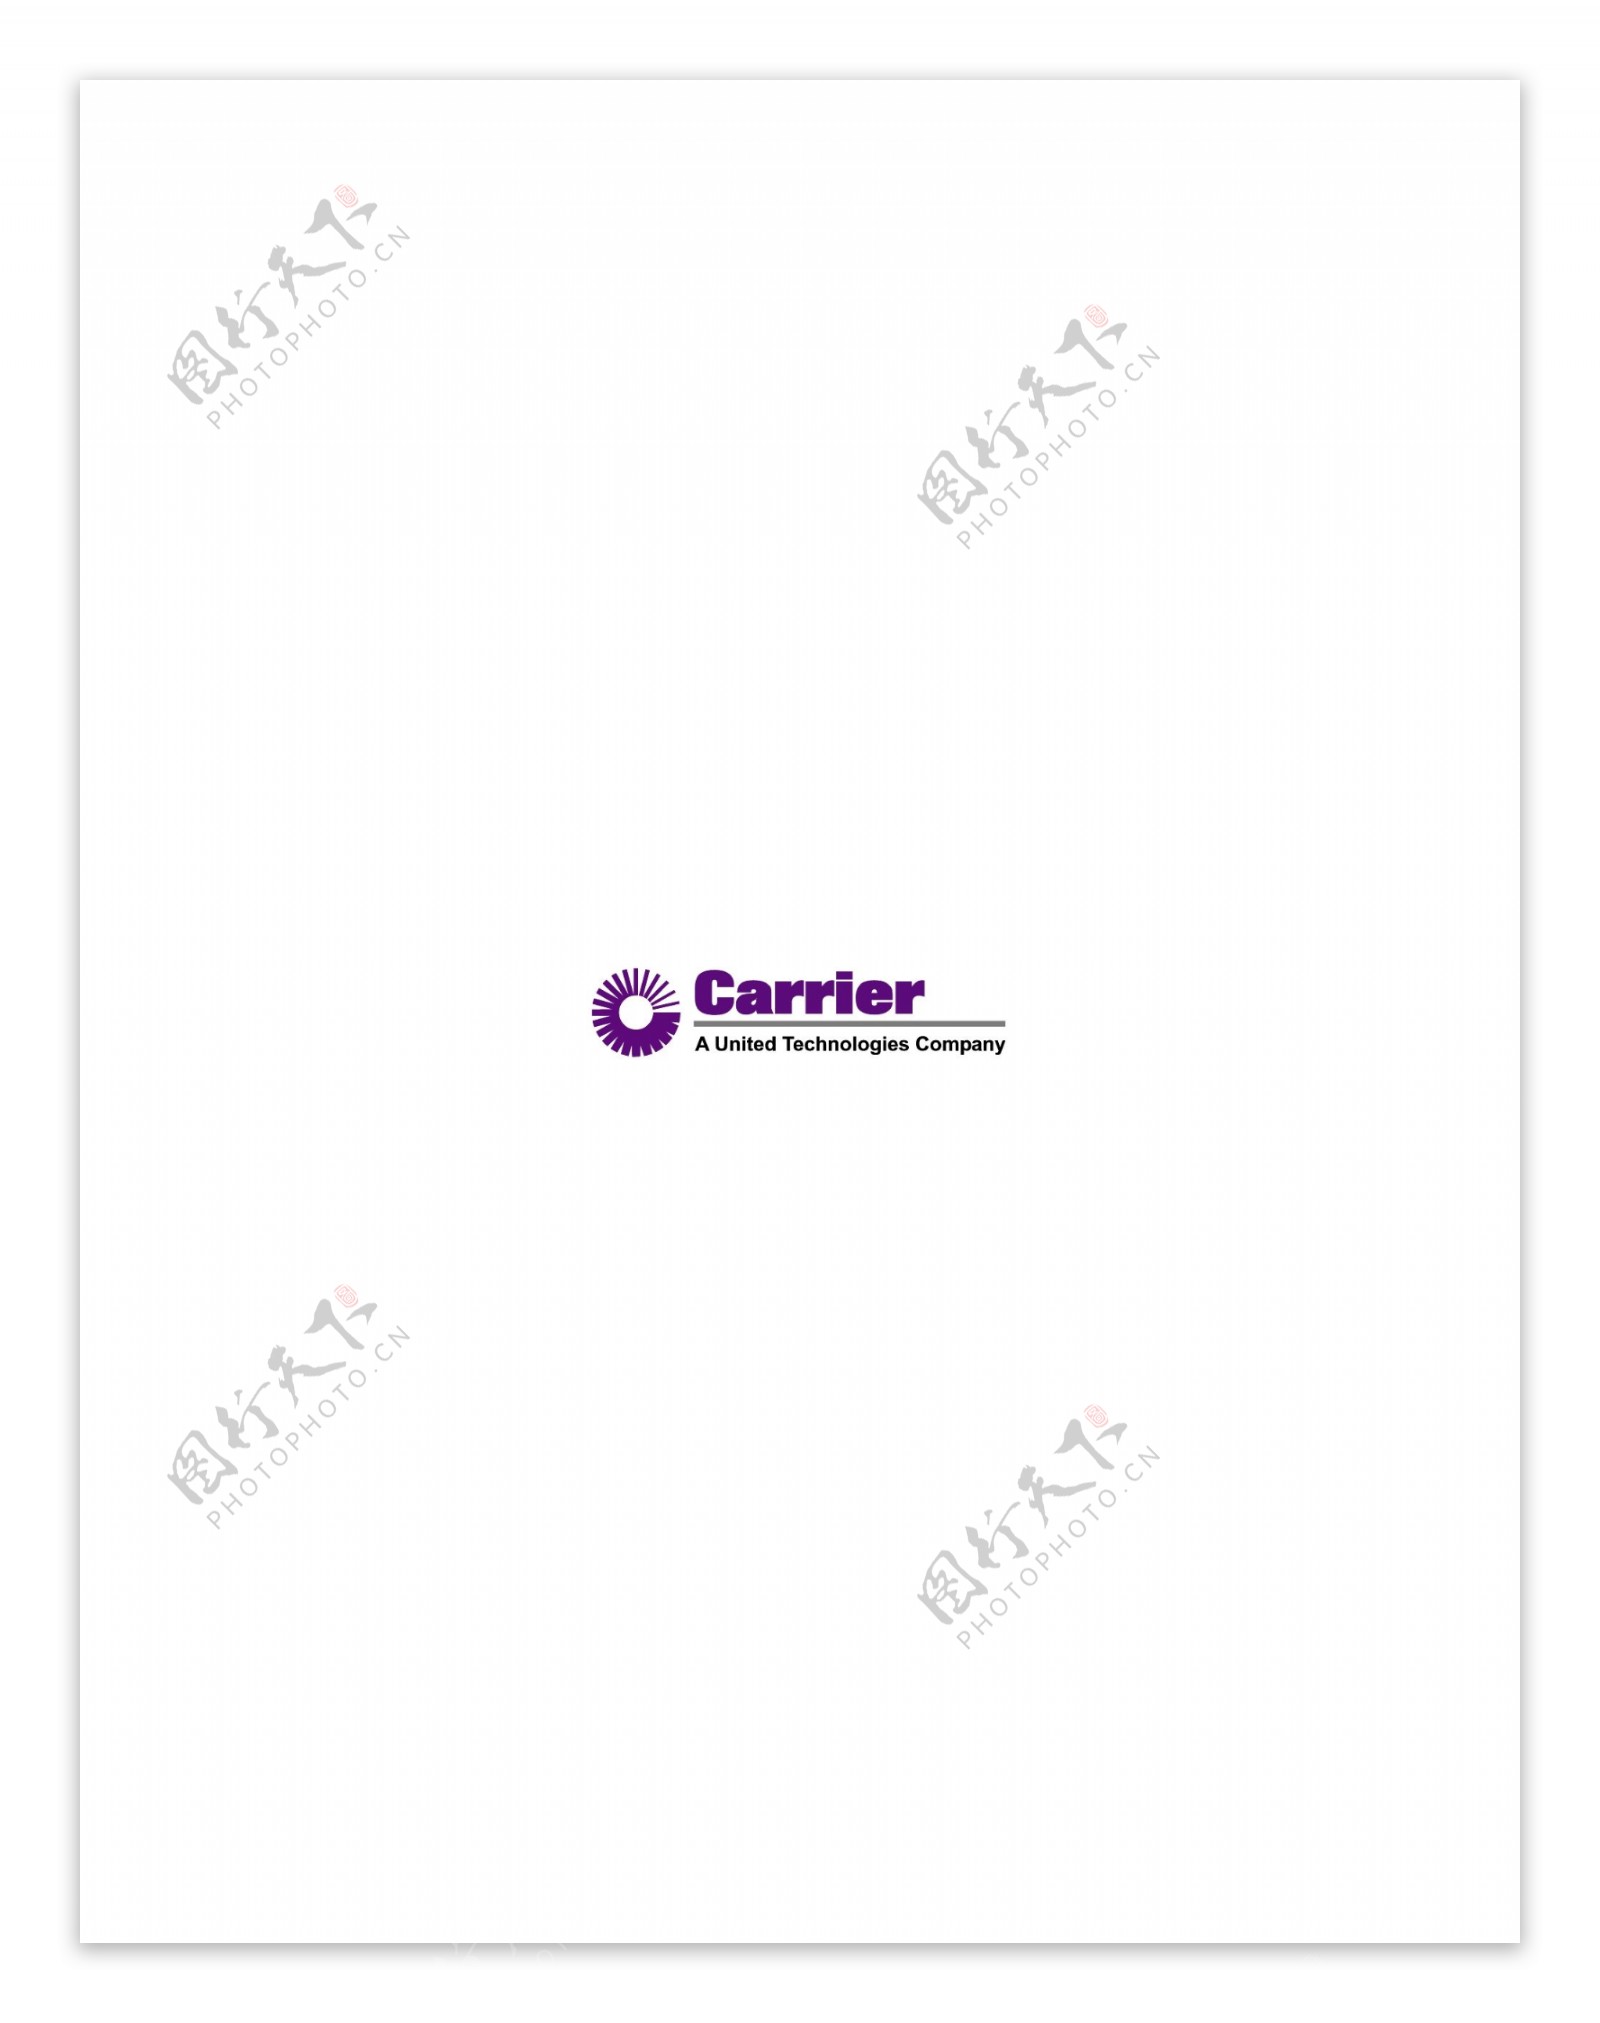 Carrierlogo设计欣赏Carrier航空业标志下载标志设计欣赏